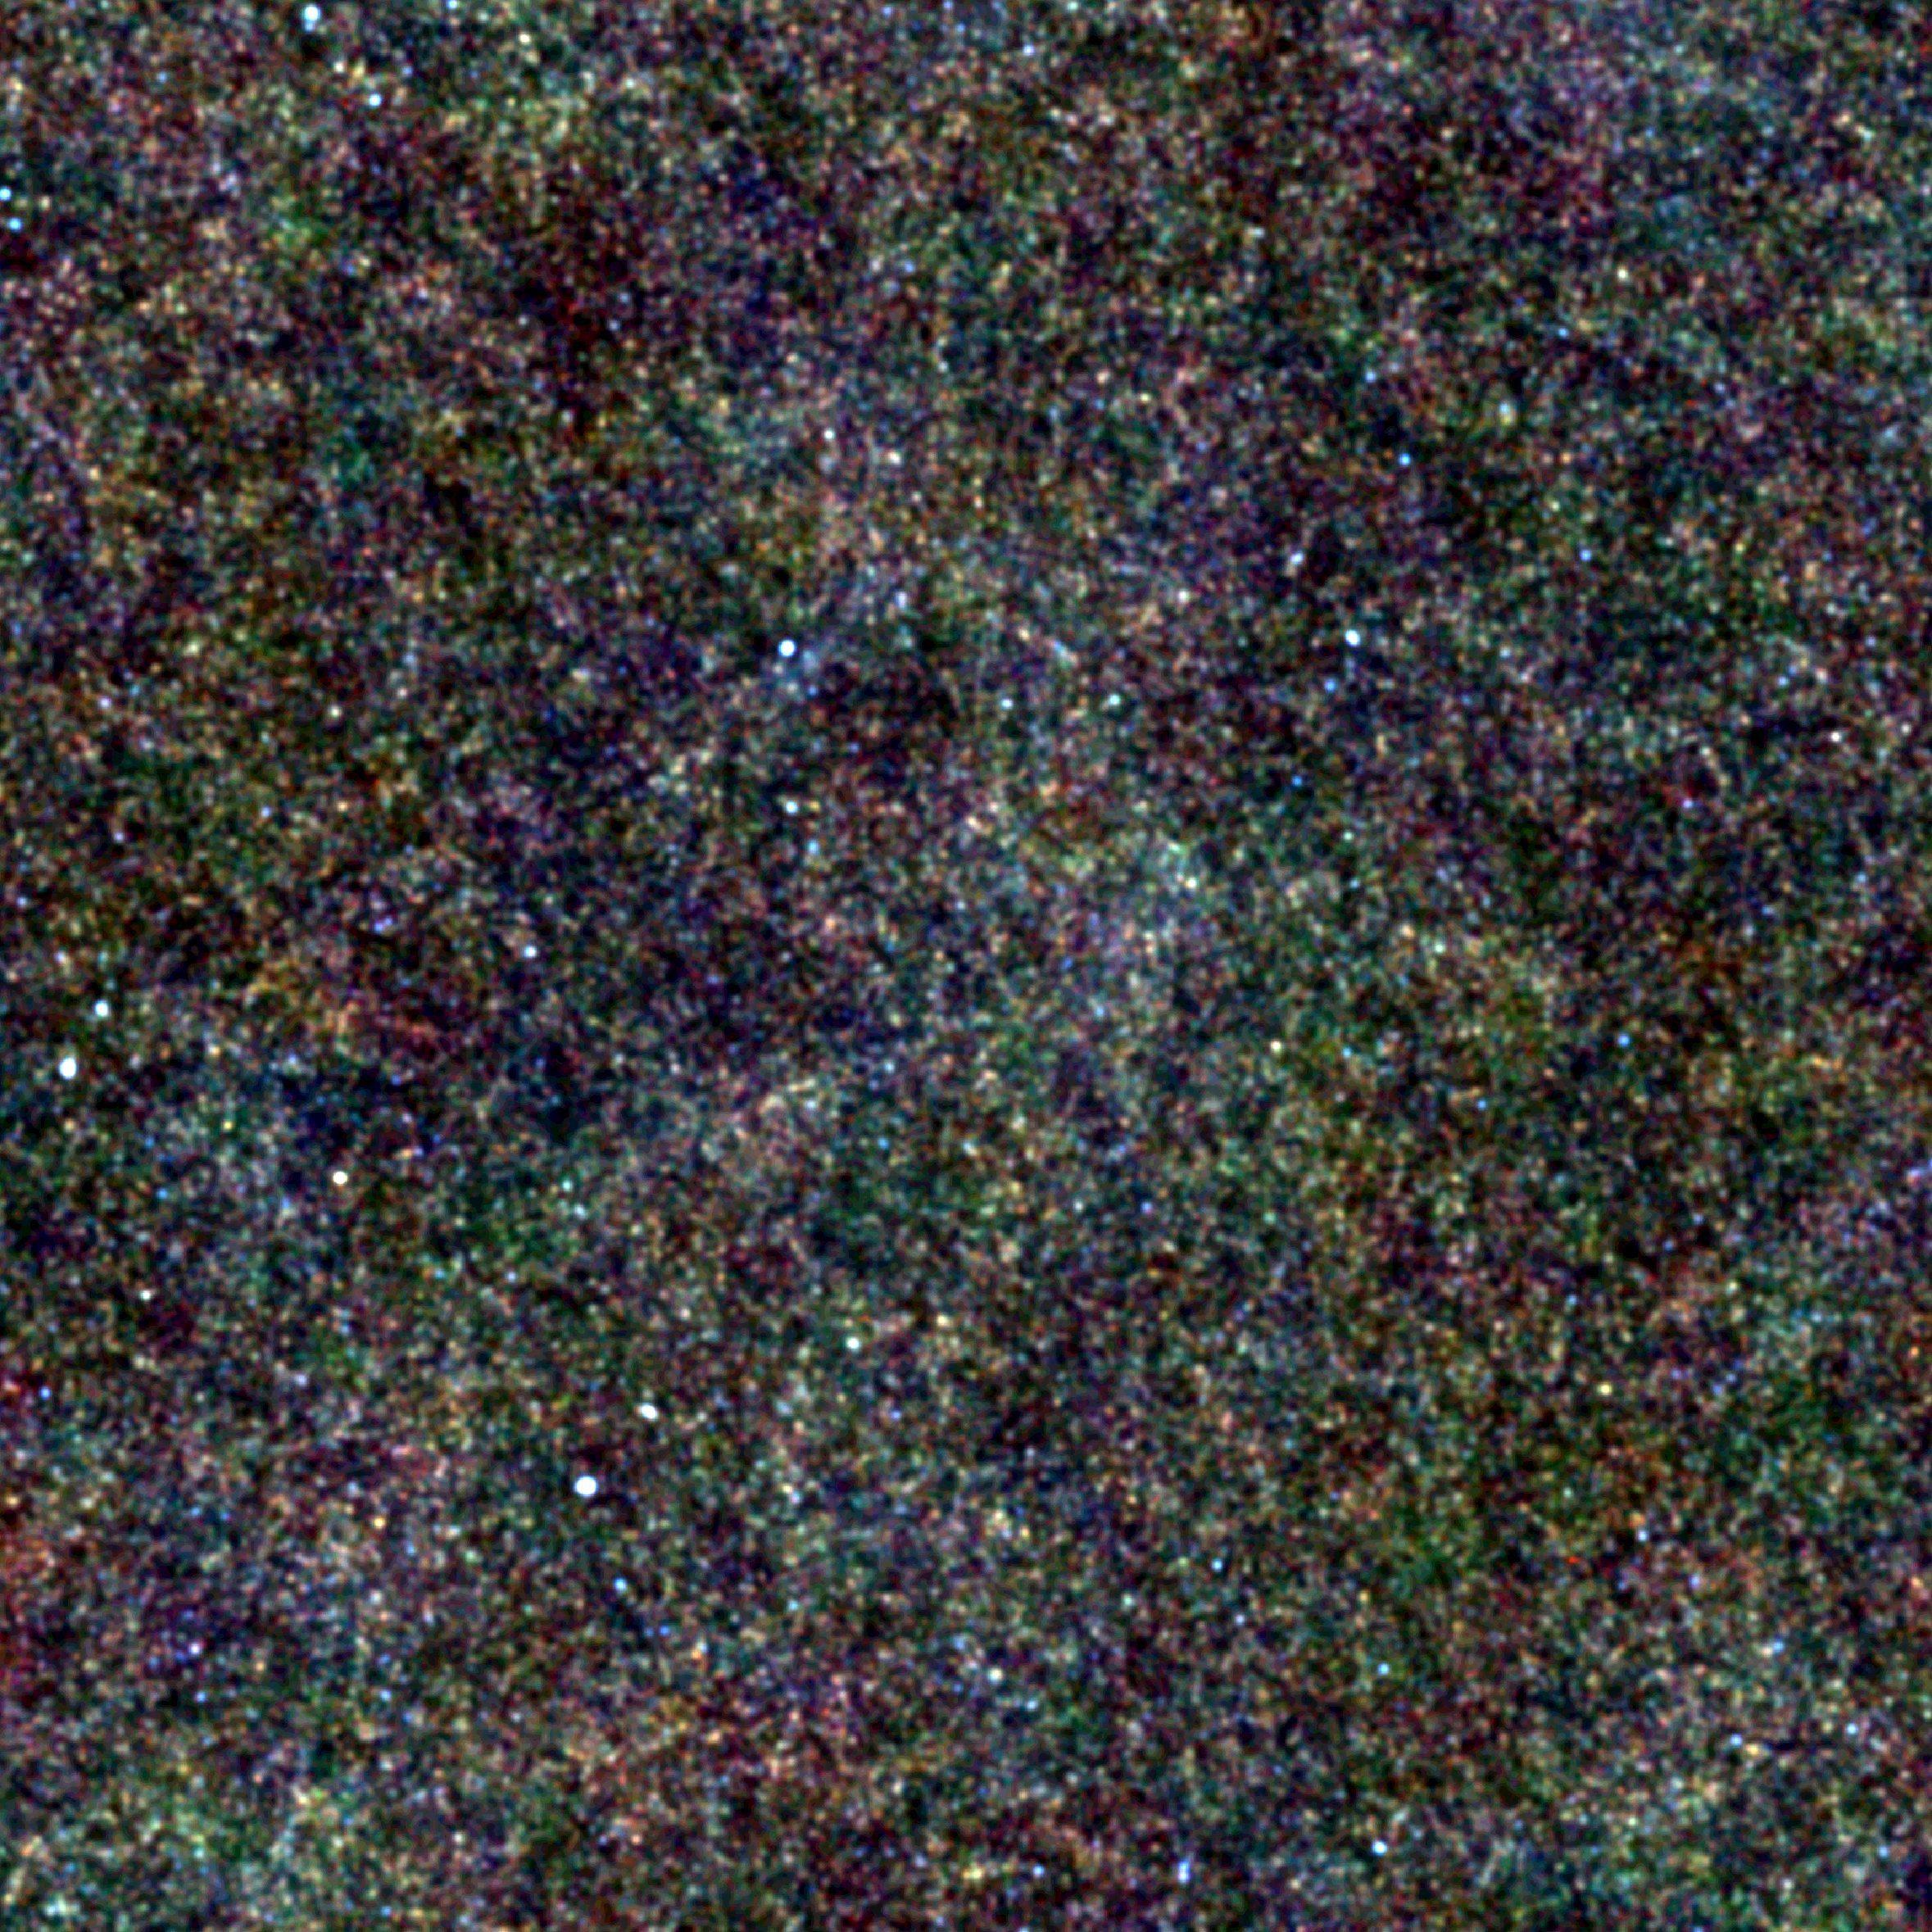 Le trou de Lockman est une région de la Voie lactée située dans la constellation de la Grande Ourse qui est presque libre de l'absorption des rayons X par le gaz d'hydrogène neutre. Il doit son nom à son découvreur, l'astronome Félix Lockman. Il a permis à Herschel d'observer des galaxies telles qu'elles étaient il y a 10 à 12 milliards d'années. On voit ici ces galaxies sous forme de points. © Esa & SPIRE consortium & Hermes consortium